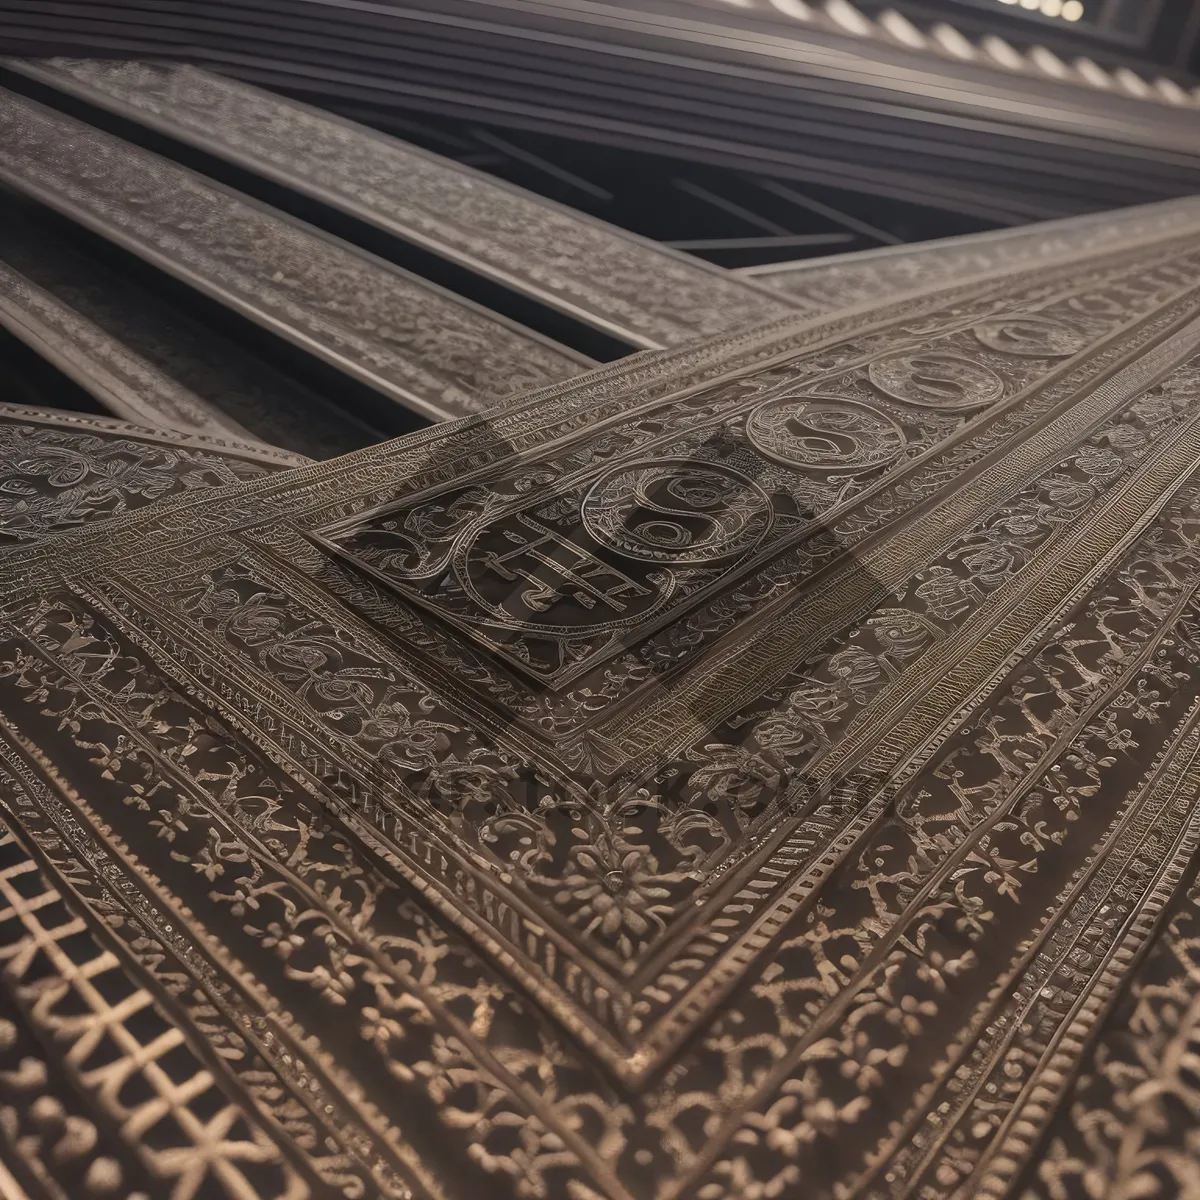 Picture of Ornate Prayer Rug: Exquisite Arabesque-textured Floor Cover